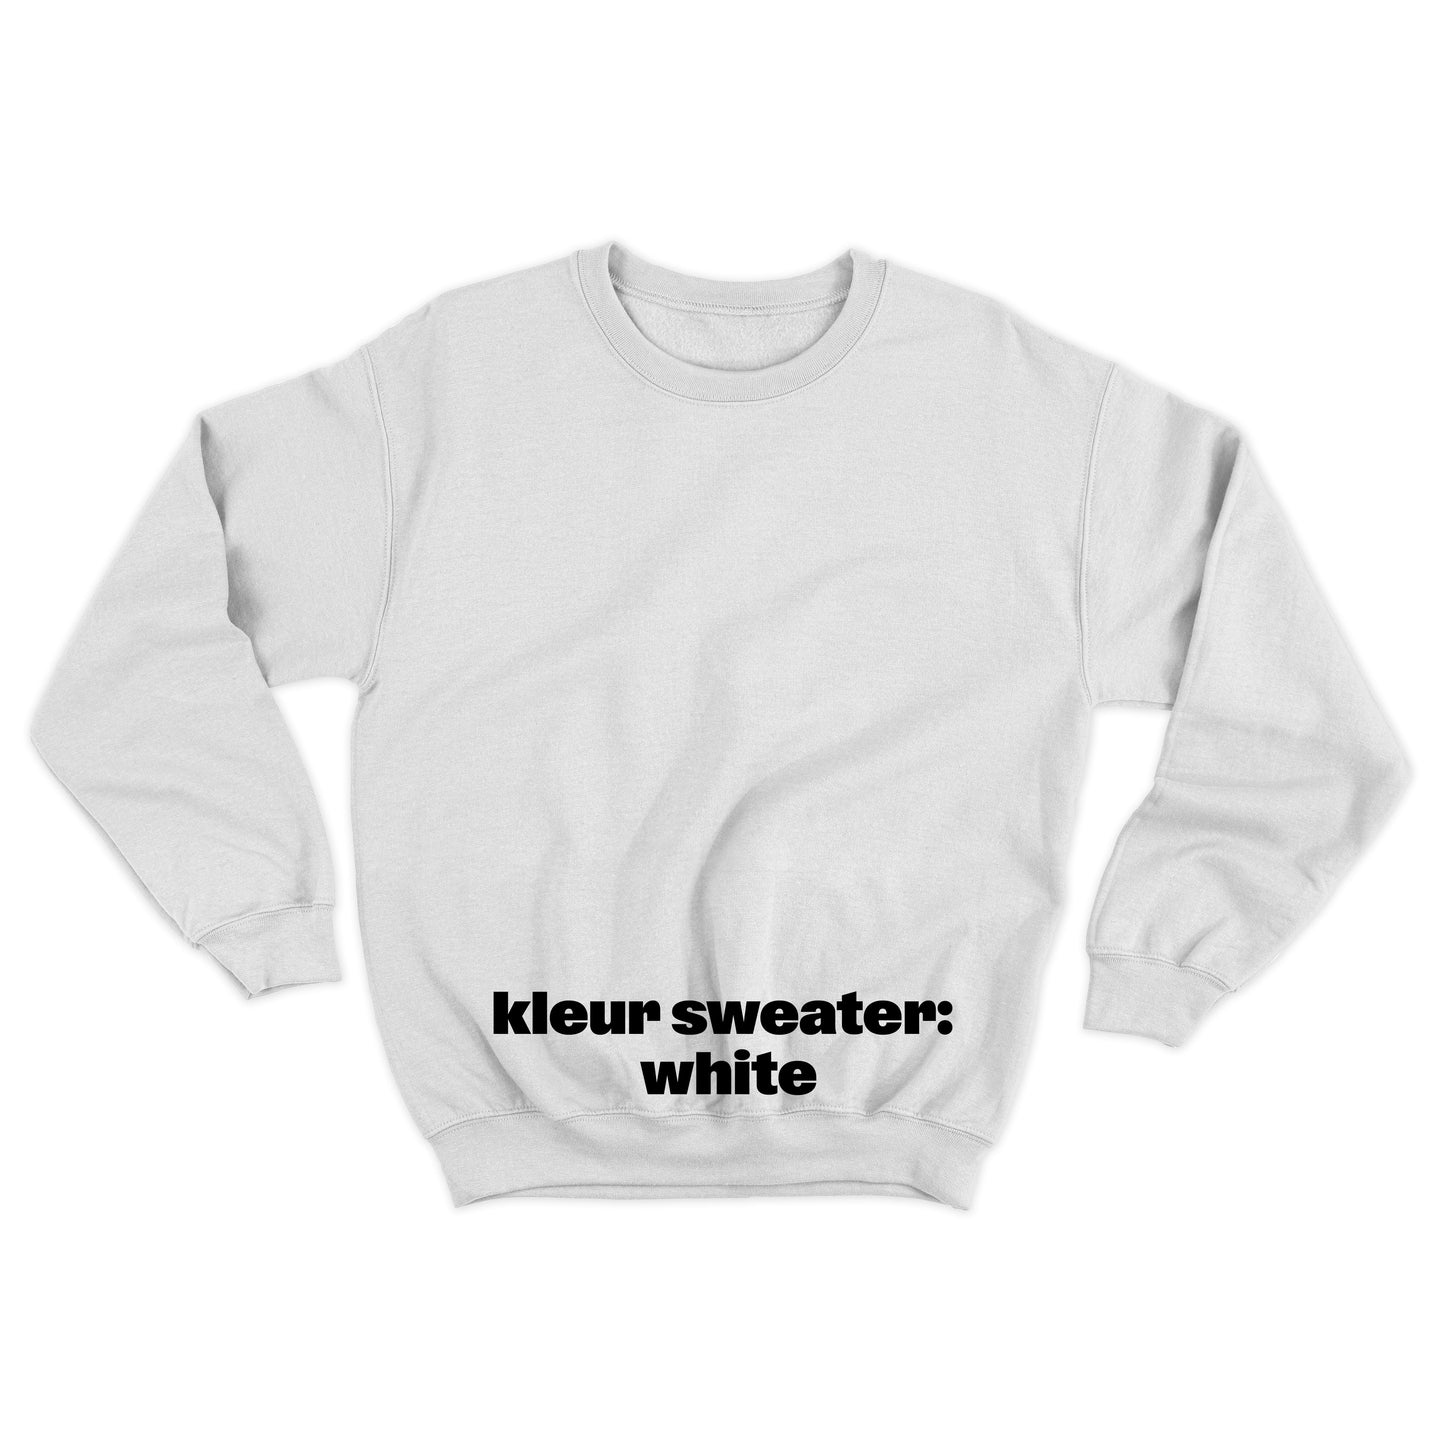 Sweater 'Rotown Vuur' • klein oranje logo borst